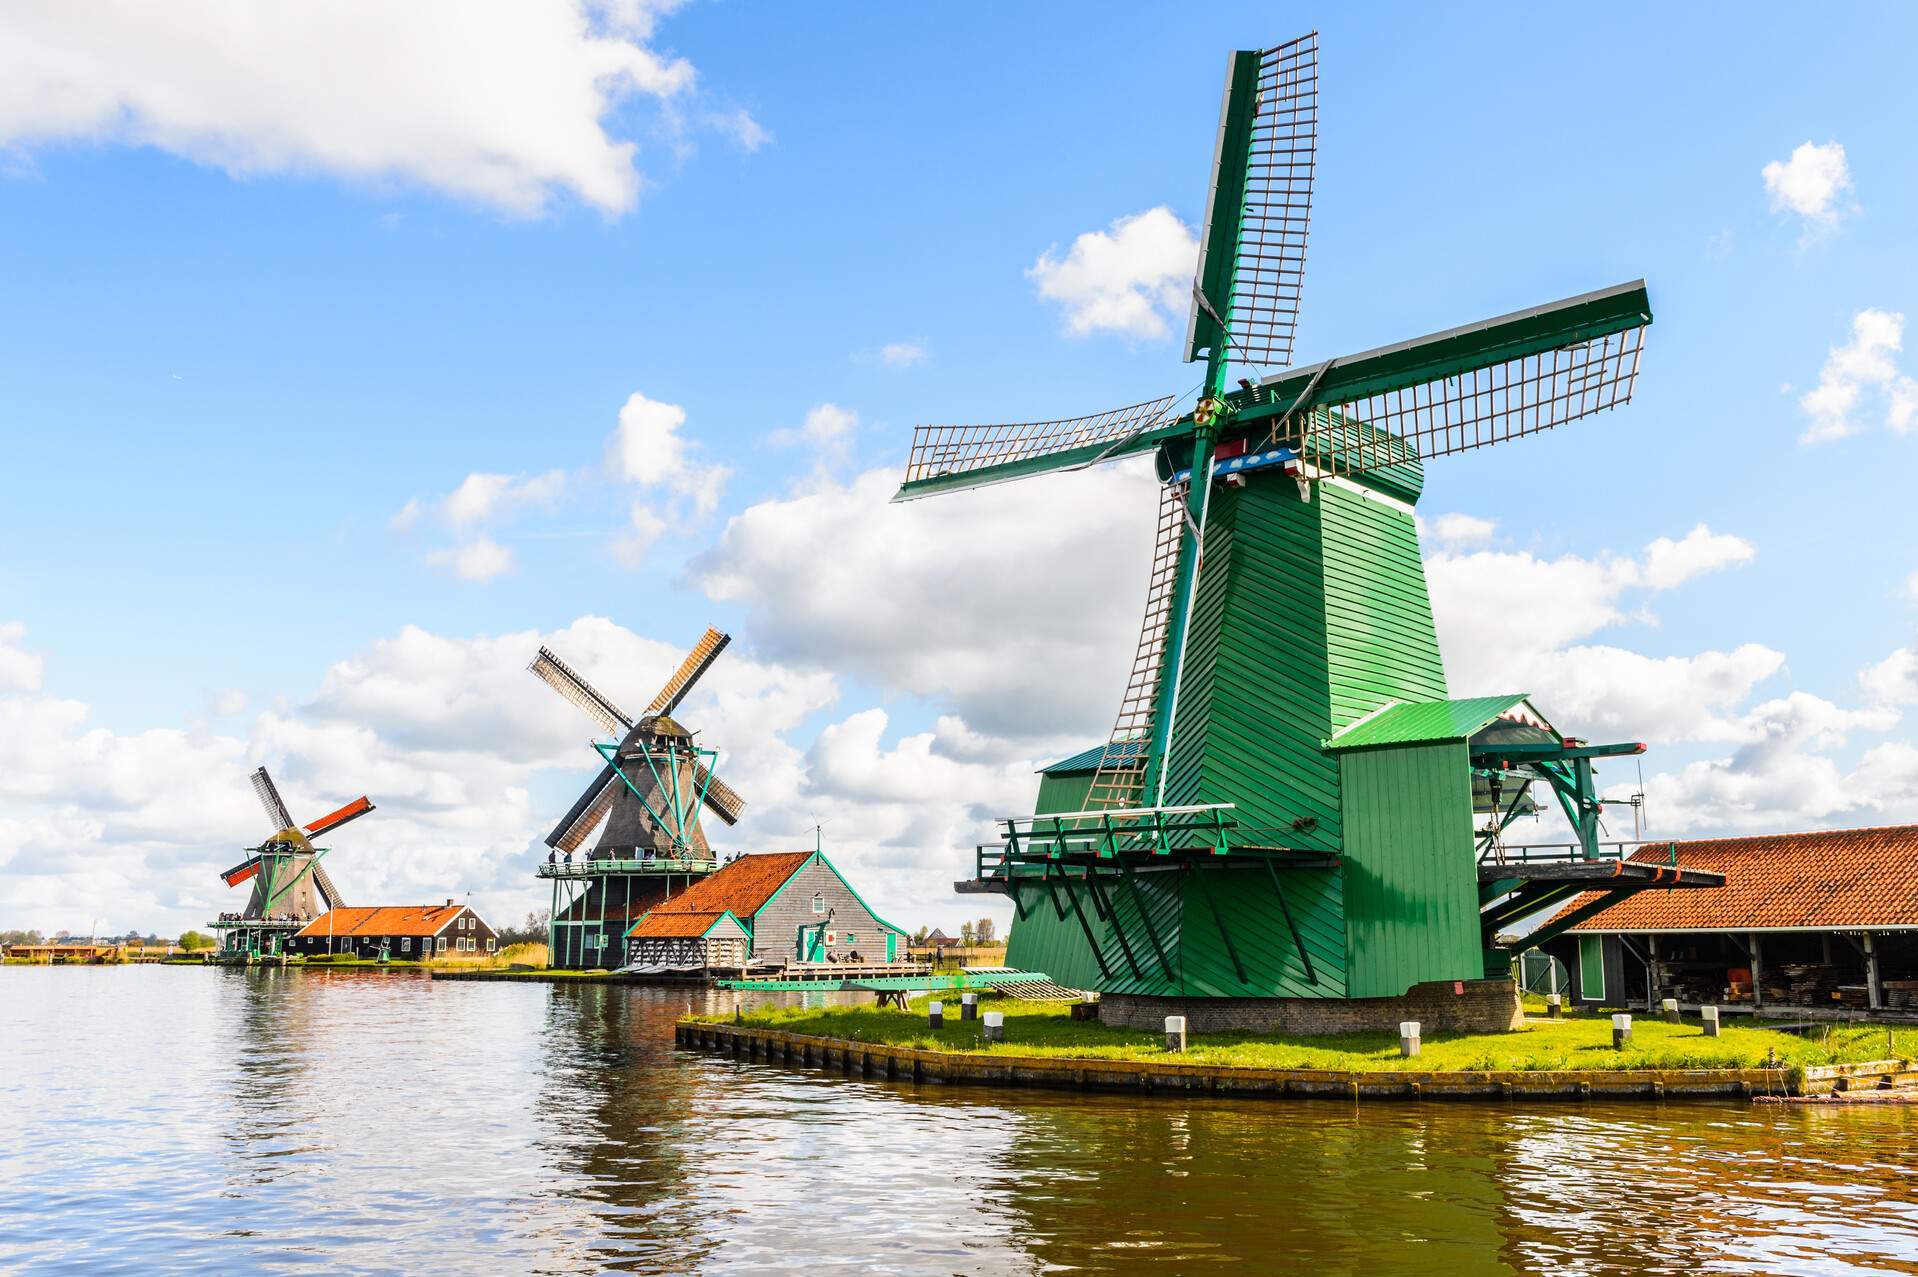 Windmills of Zaanse Schans, quiet village in Netherlands